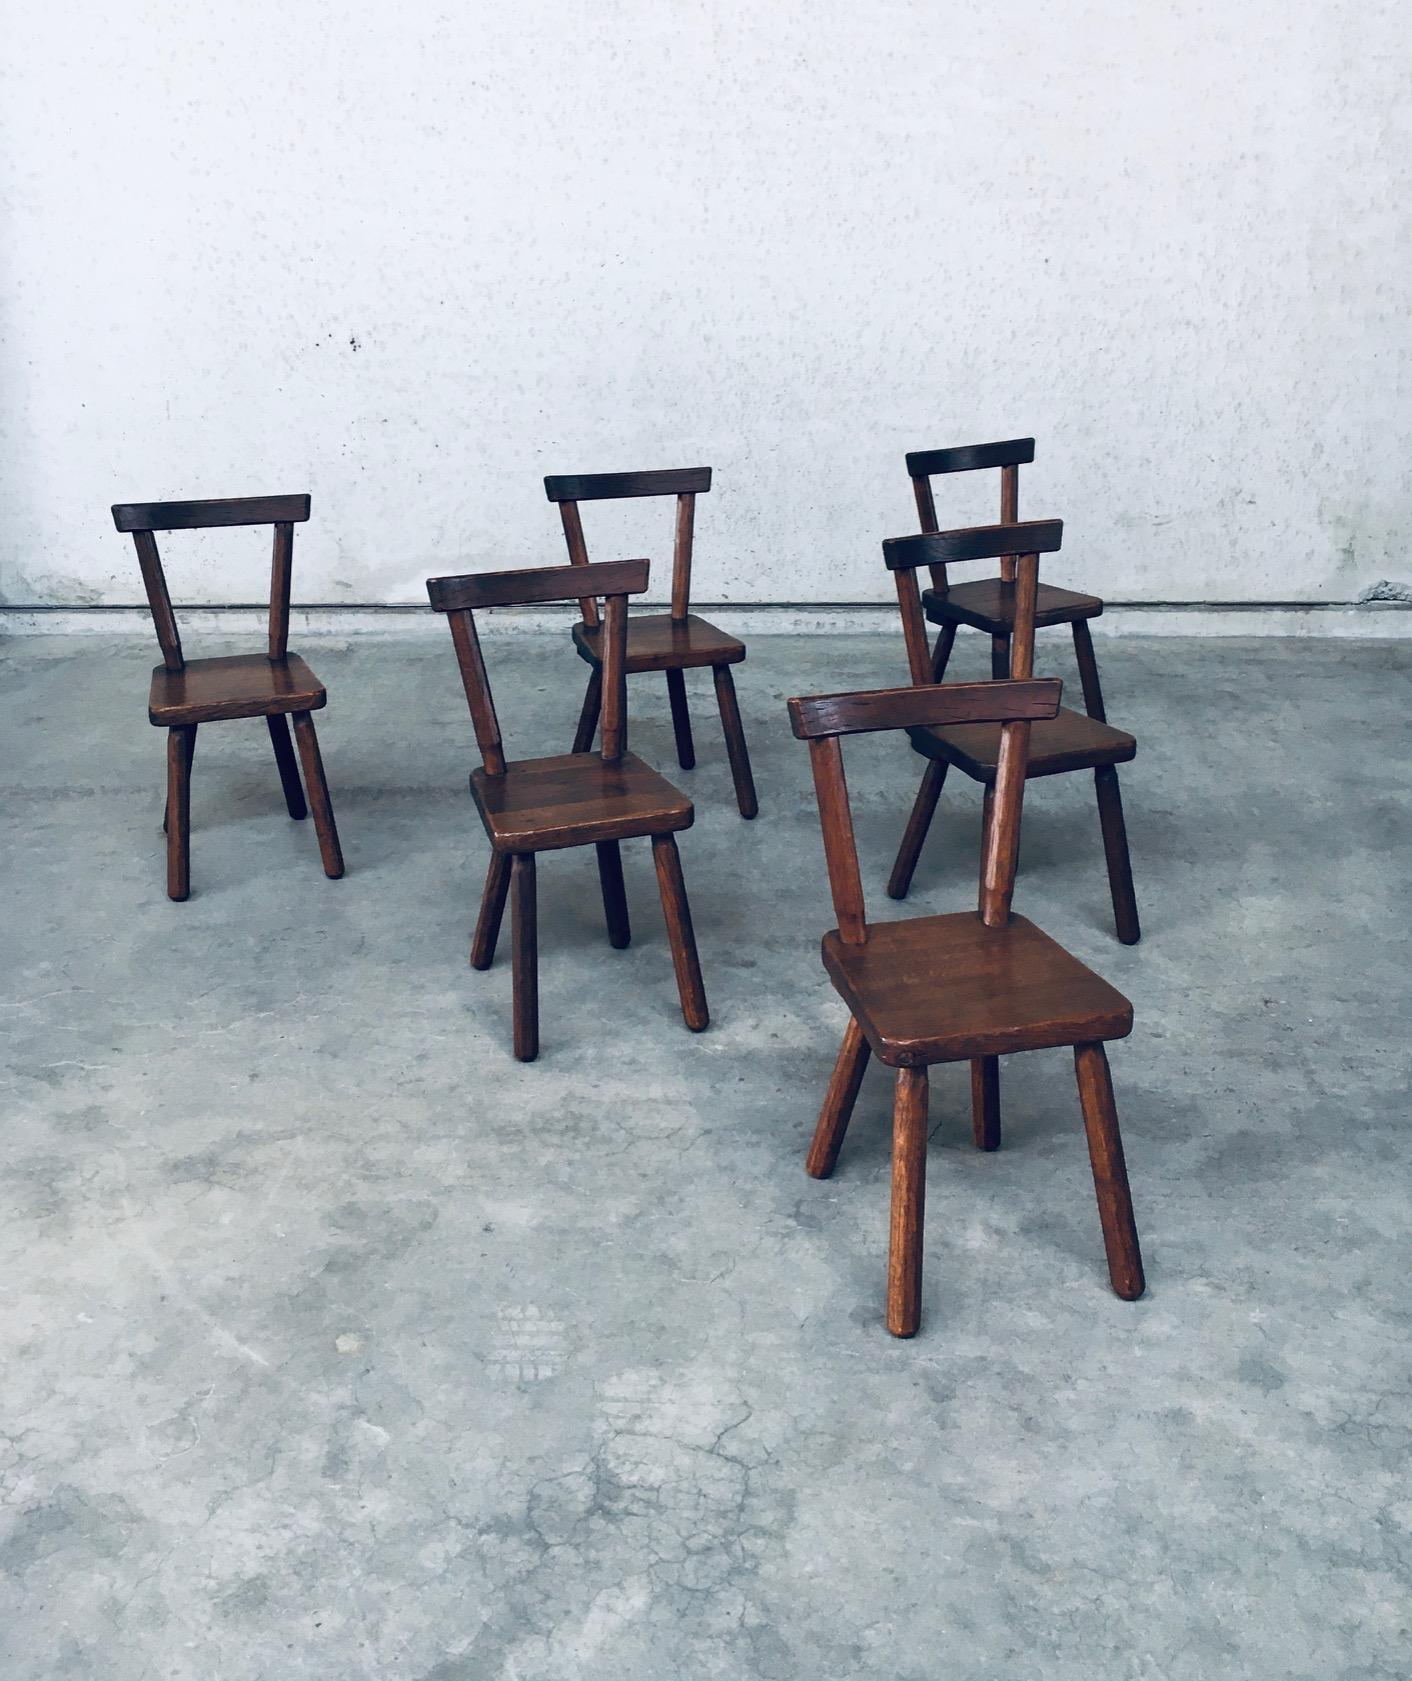 Vintage Midcentury Period Brutalist Design Solid Oak Dining Chair set of 6. Made in Belgium, 1950's / 60's period. Probablement par Kunstmeubelen De Puydt. Non marqué. Chaises en chêne massif avec des sculptures en relief dans le bois et des